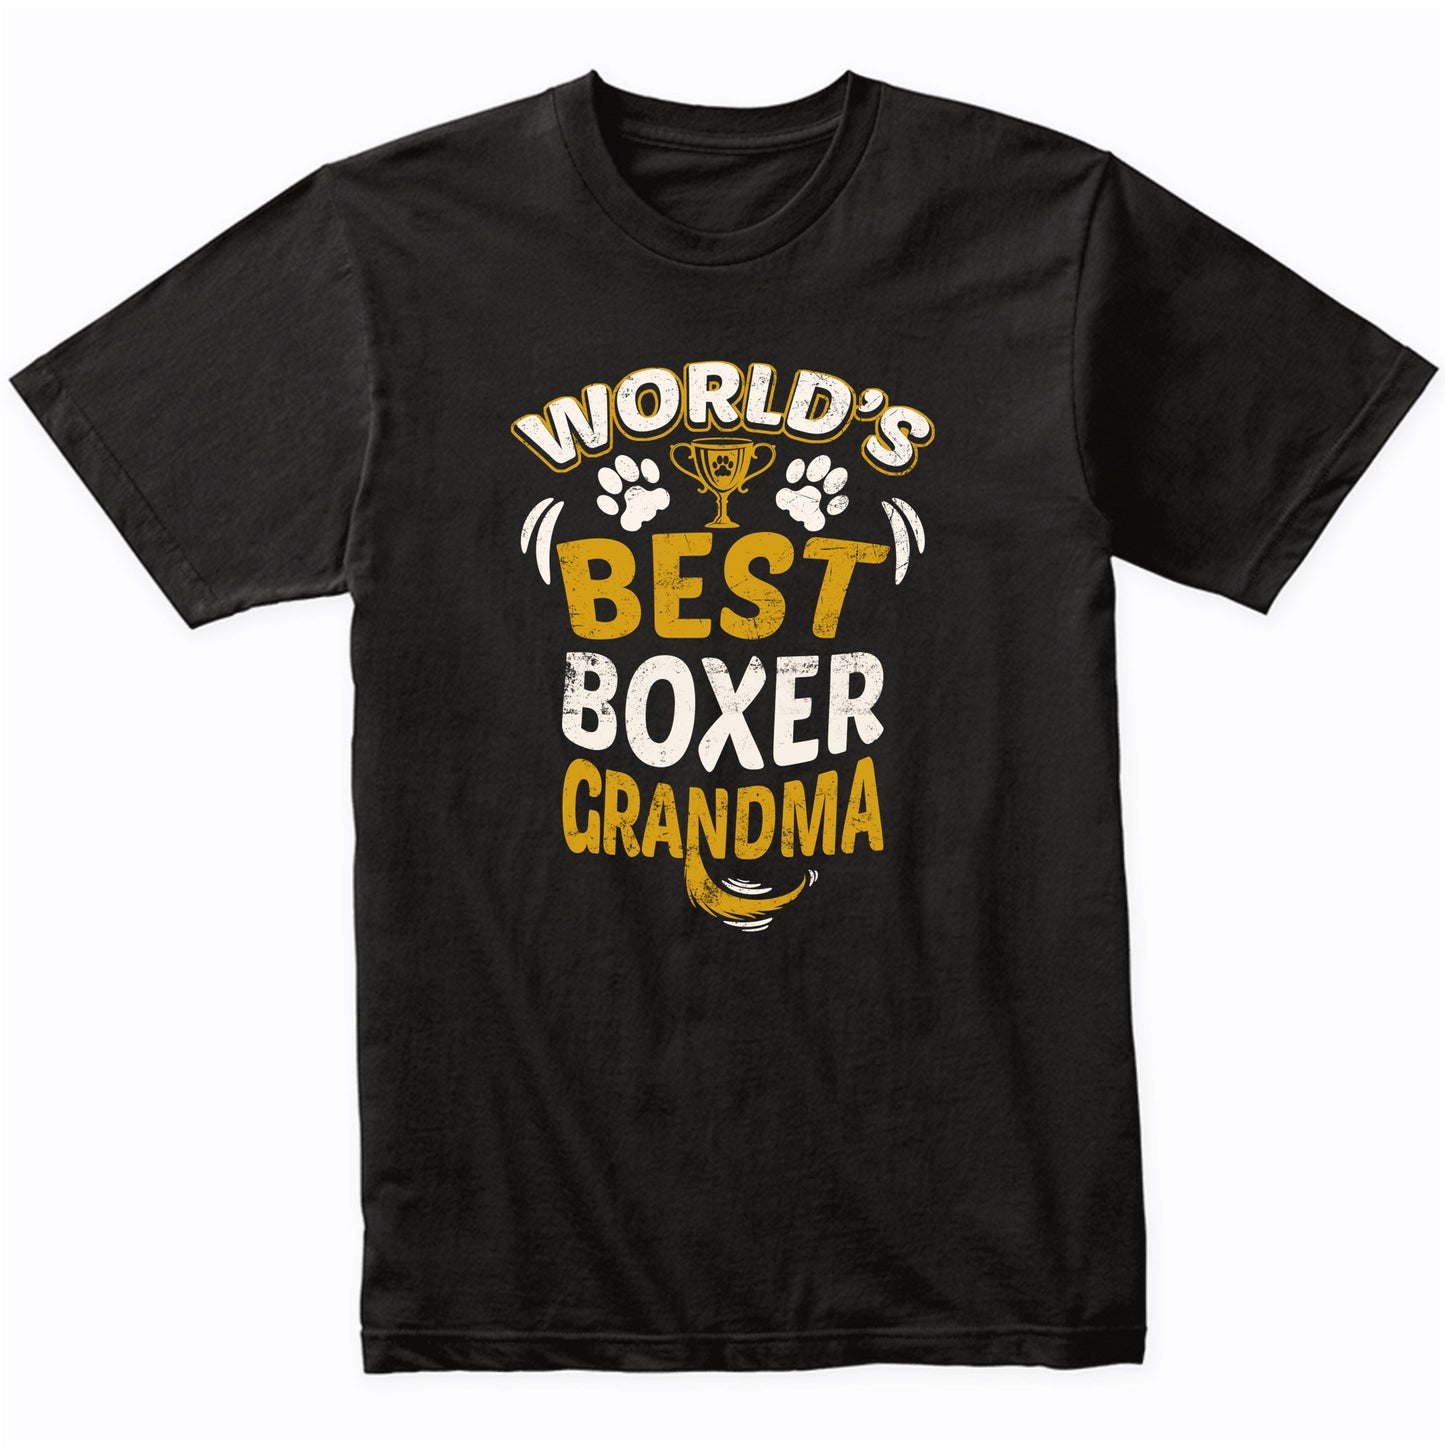 World's Best Boxer Grandma Graphic T-Shirt